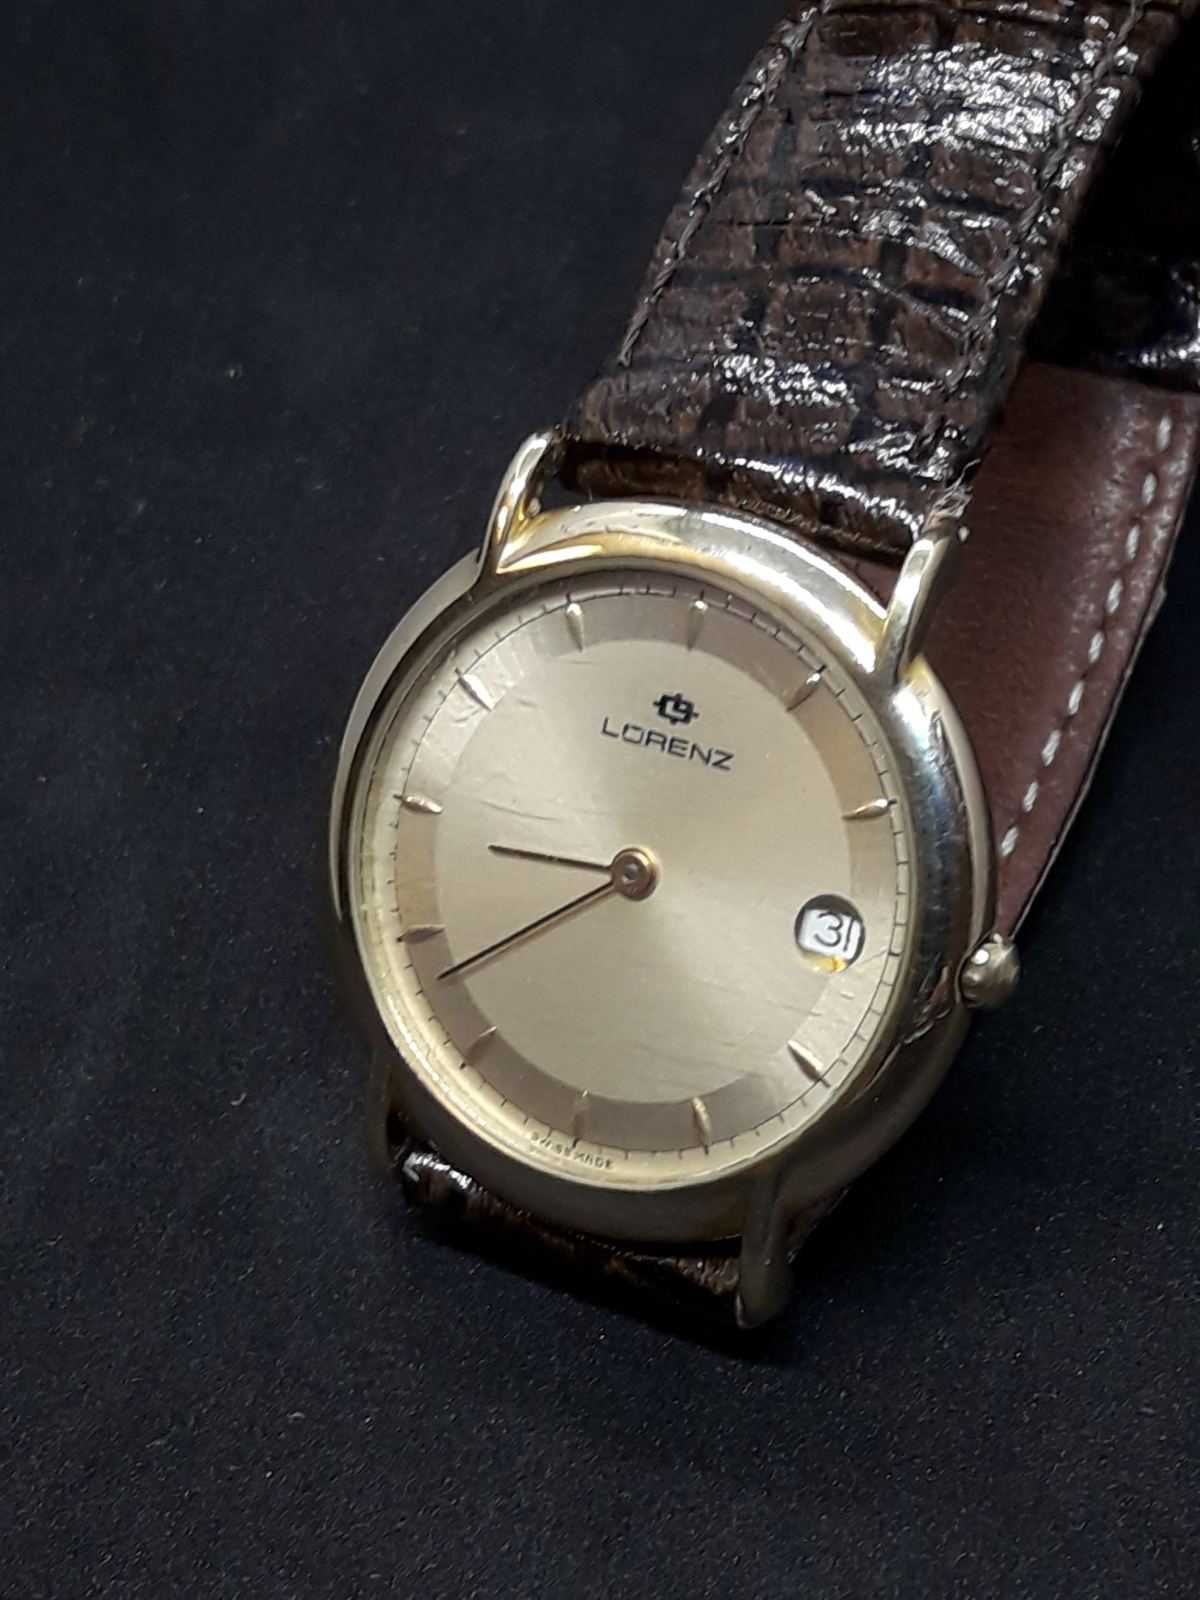 Швейцарские часы Lorenz - оригинал.